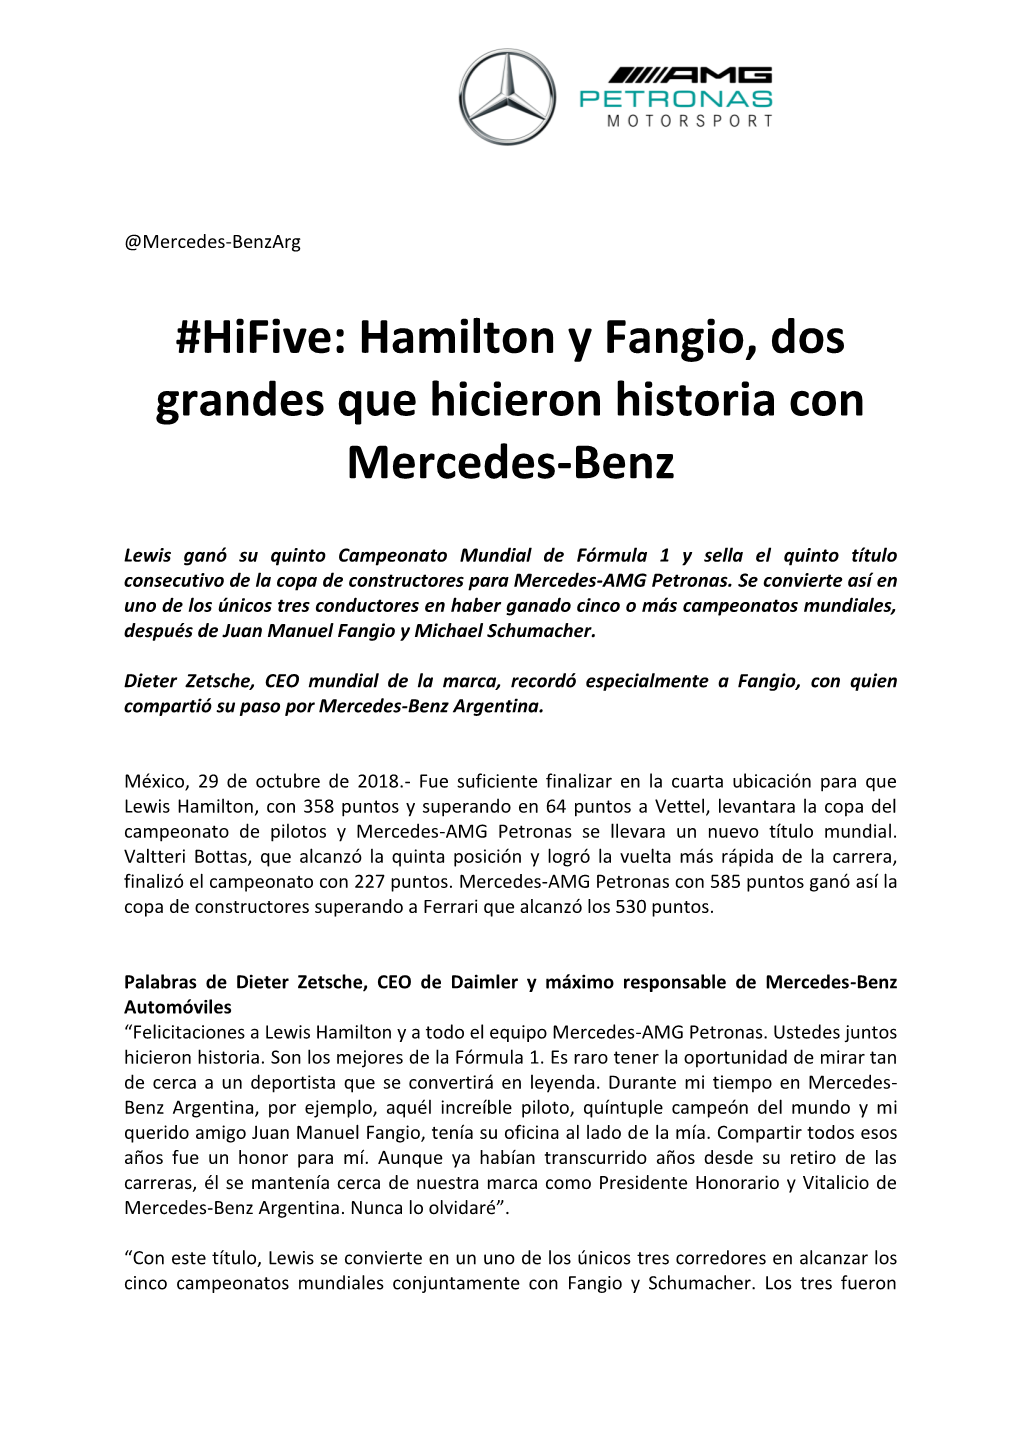 Hifive: Hamilton Y Fangio, Dos Grandes Que Hicieron Historia Con Mercedes-Benz